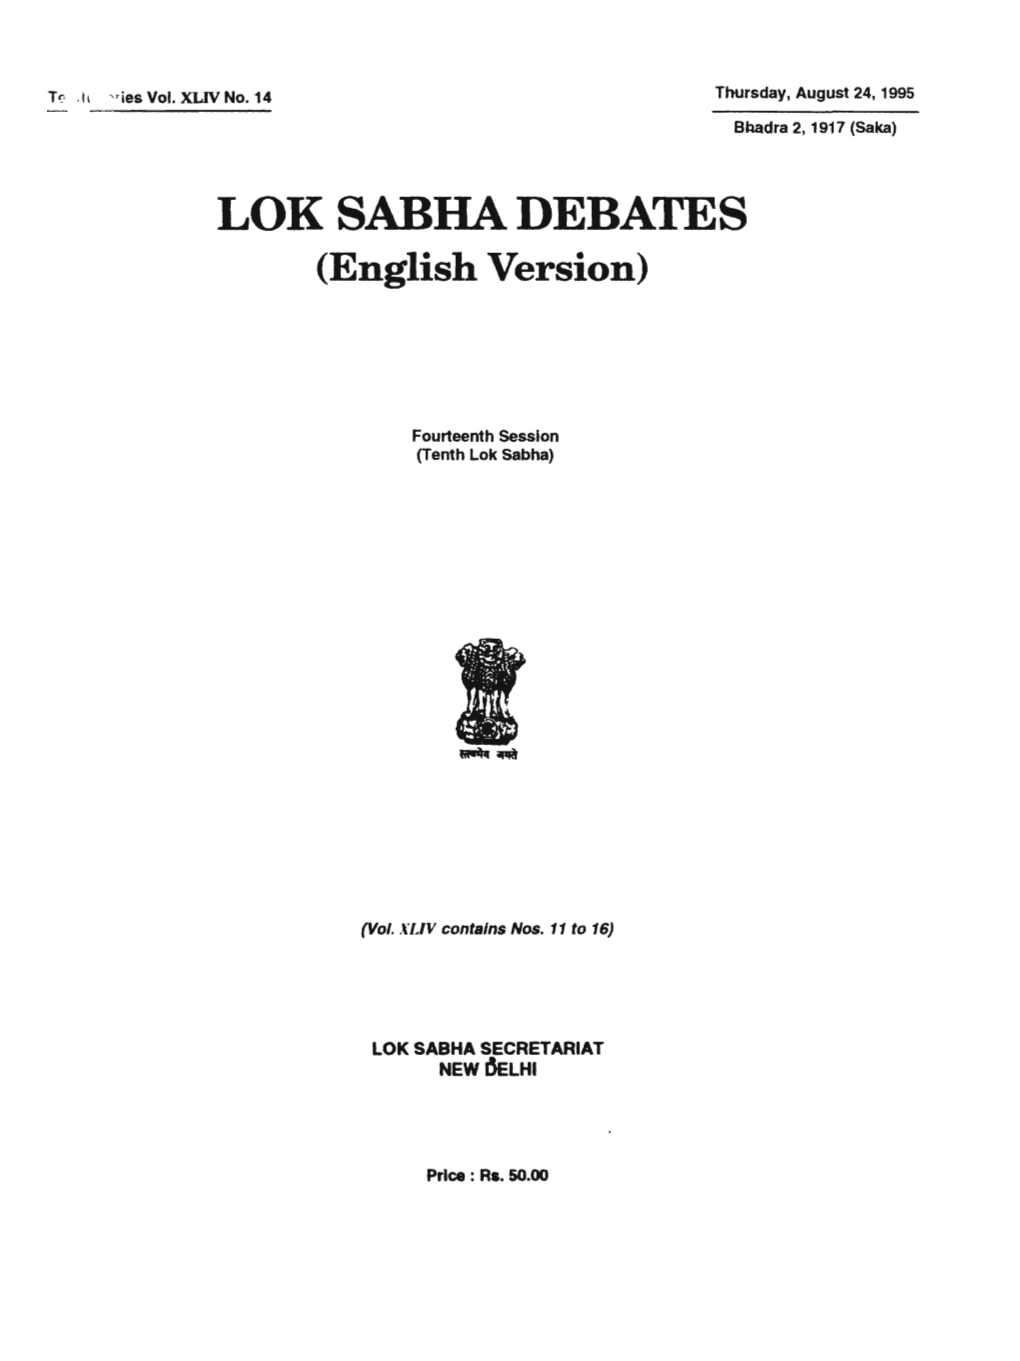 LOK SABRA DEBATES (English Version)